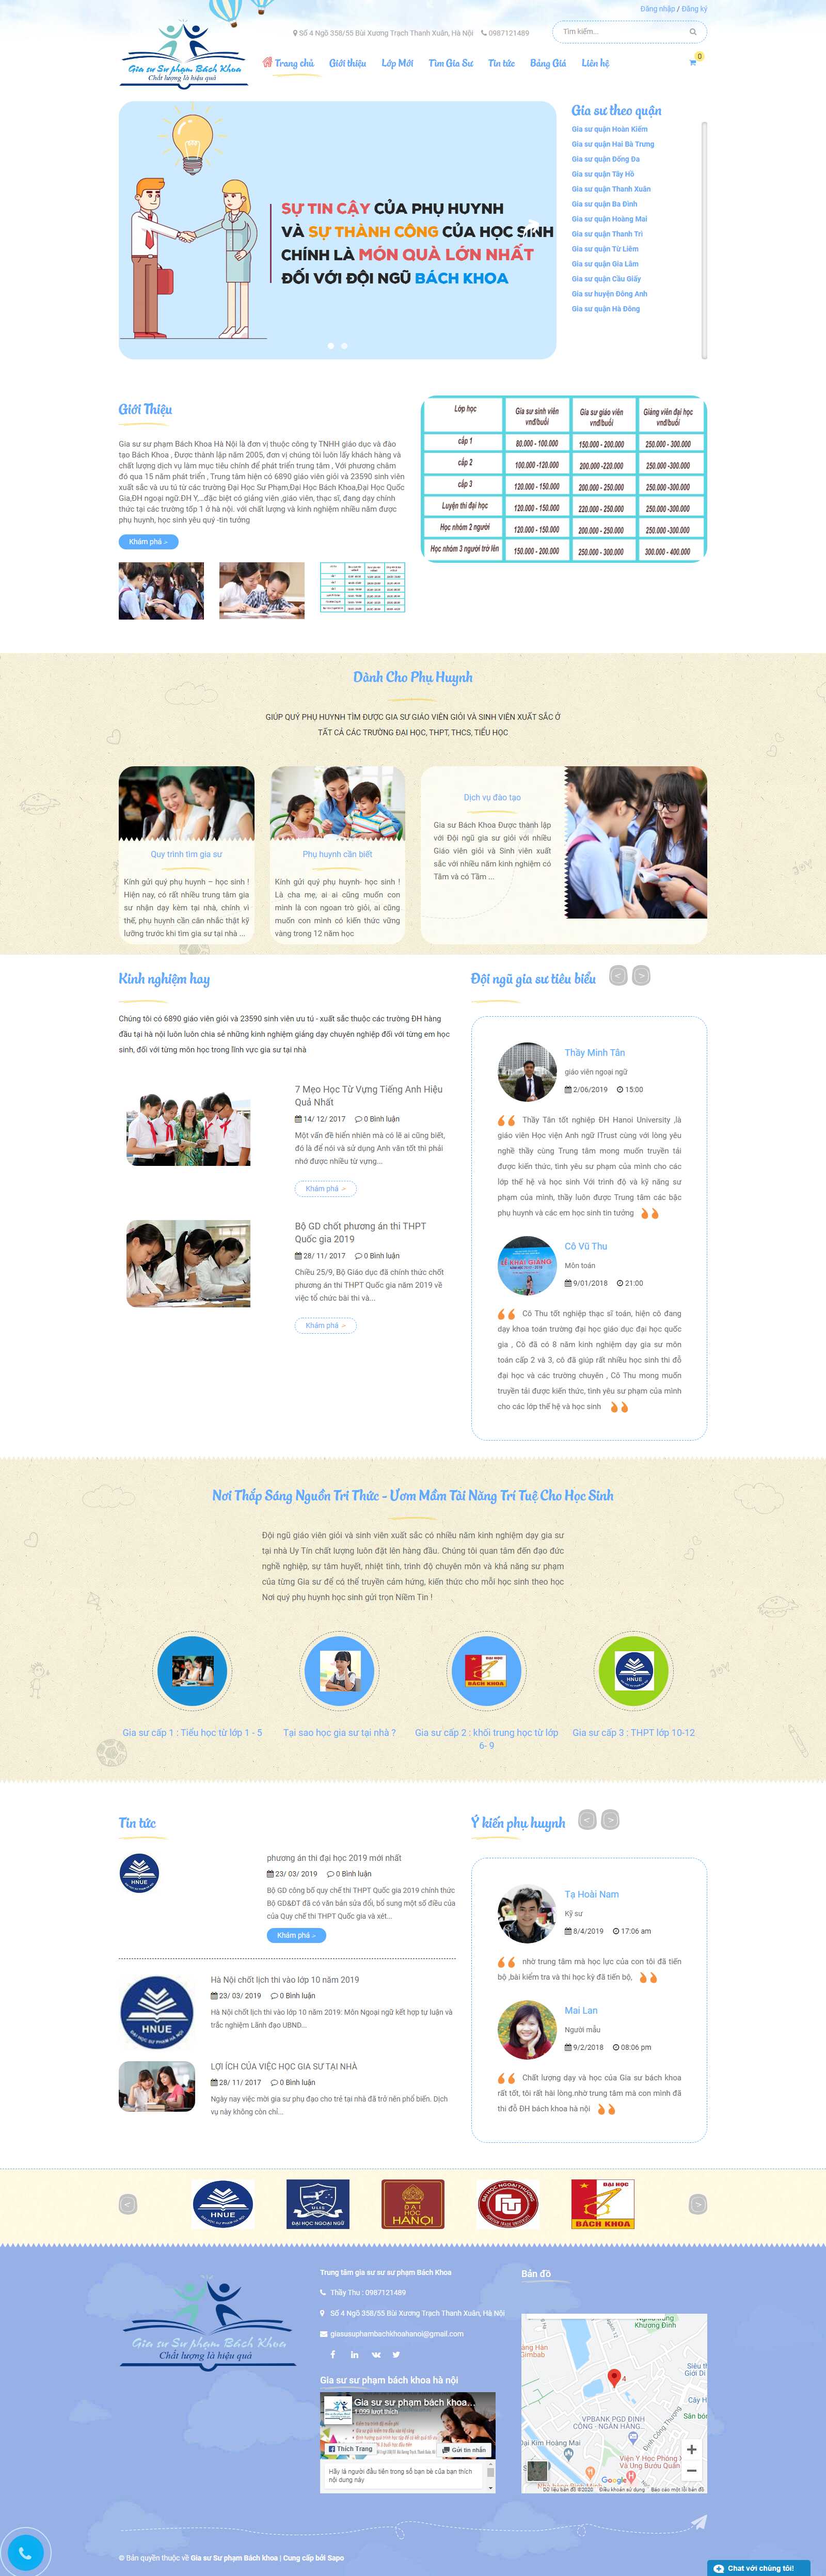 Thiết kế Website trung tâm gia sư - giasusuphambachkhoa.com.vn